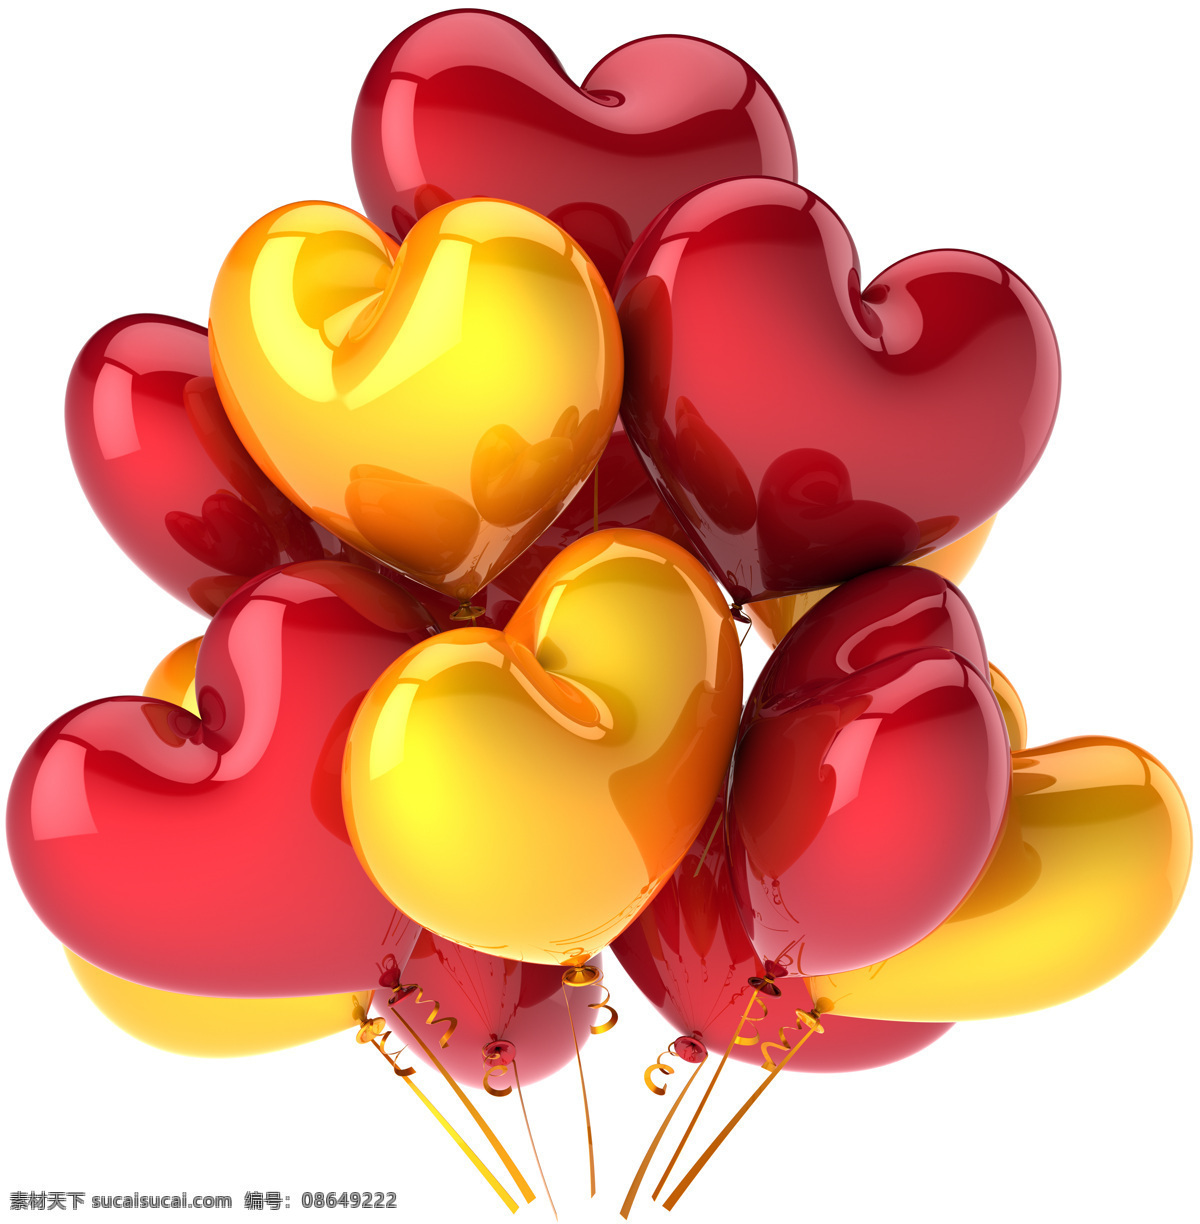 心形 彩色 气球 心 情人节 节日素材 气球摄影 气球素材 彩色气球 玩具 底纹背景 其他类别 生活百科